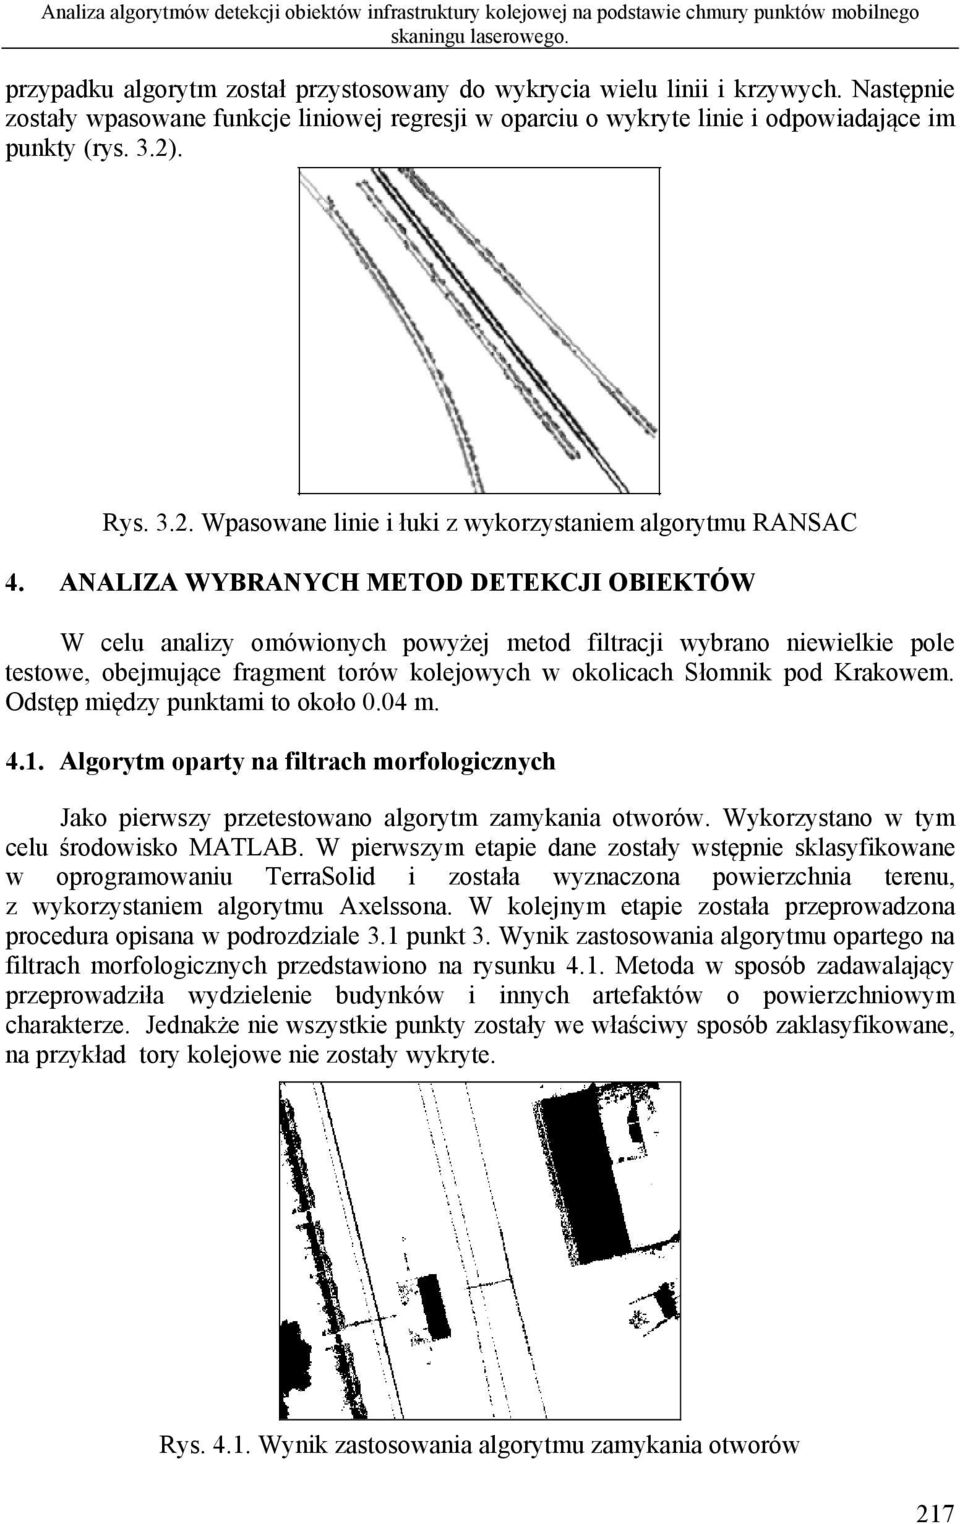 ANALIZA WYBRANYCH METOD DETEKCJI OBIEKTÓW W celu analizy omówionych powyżej metod filtracji wybrano niewielkie pole testowe, obejmujące fragment torów kolejowych w okolicach Słomnik pod Krakowem.